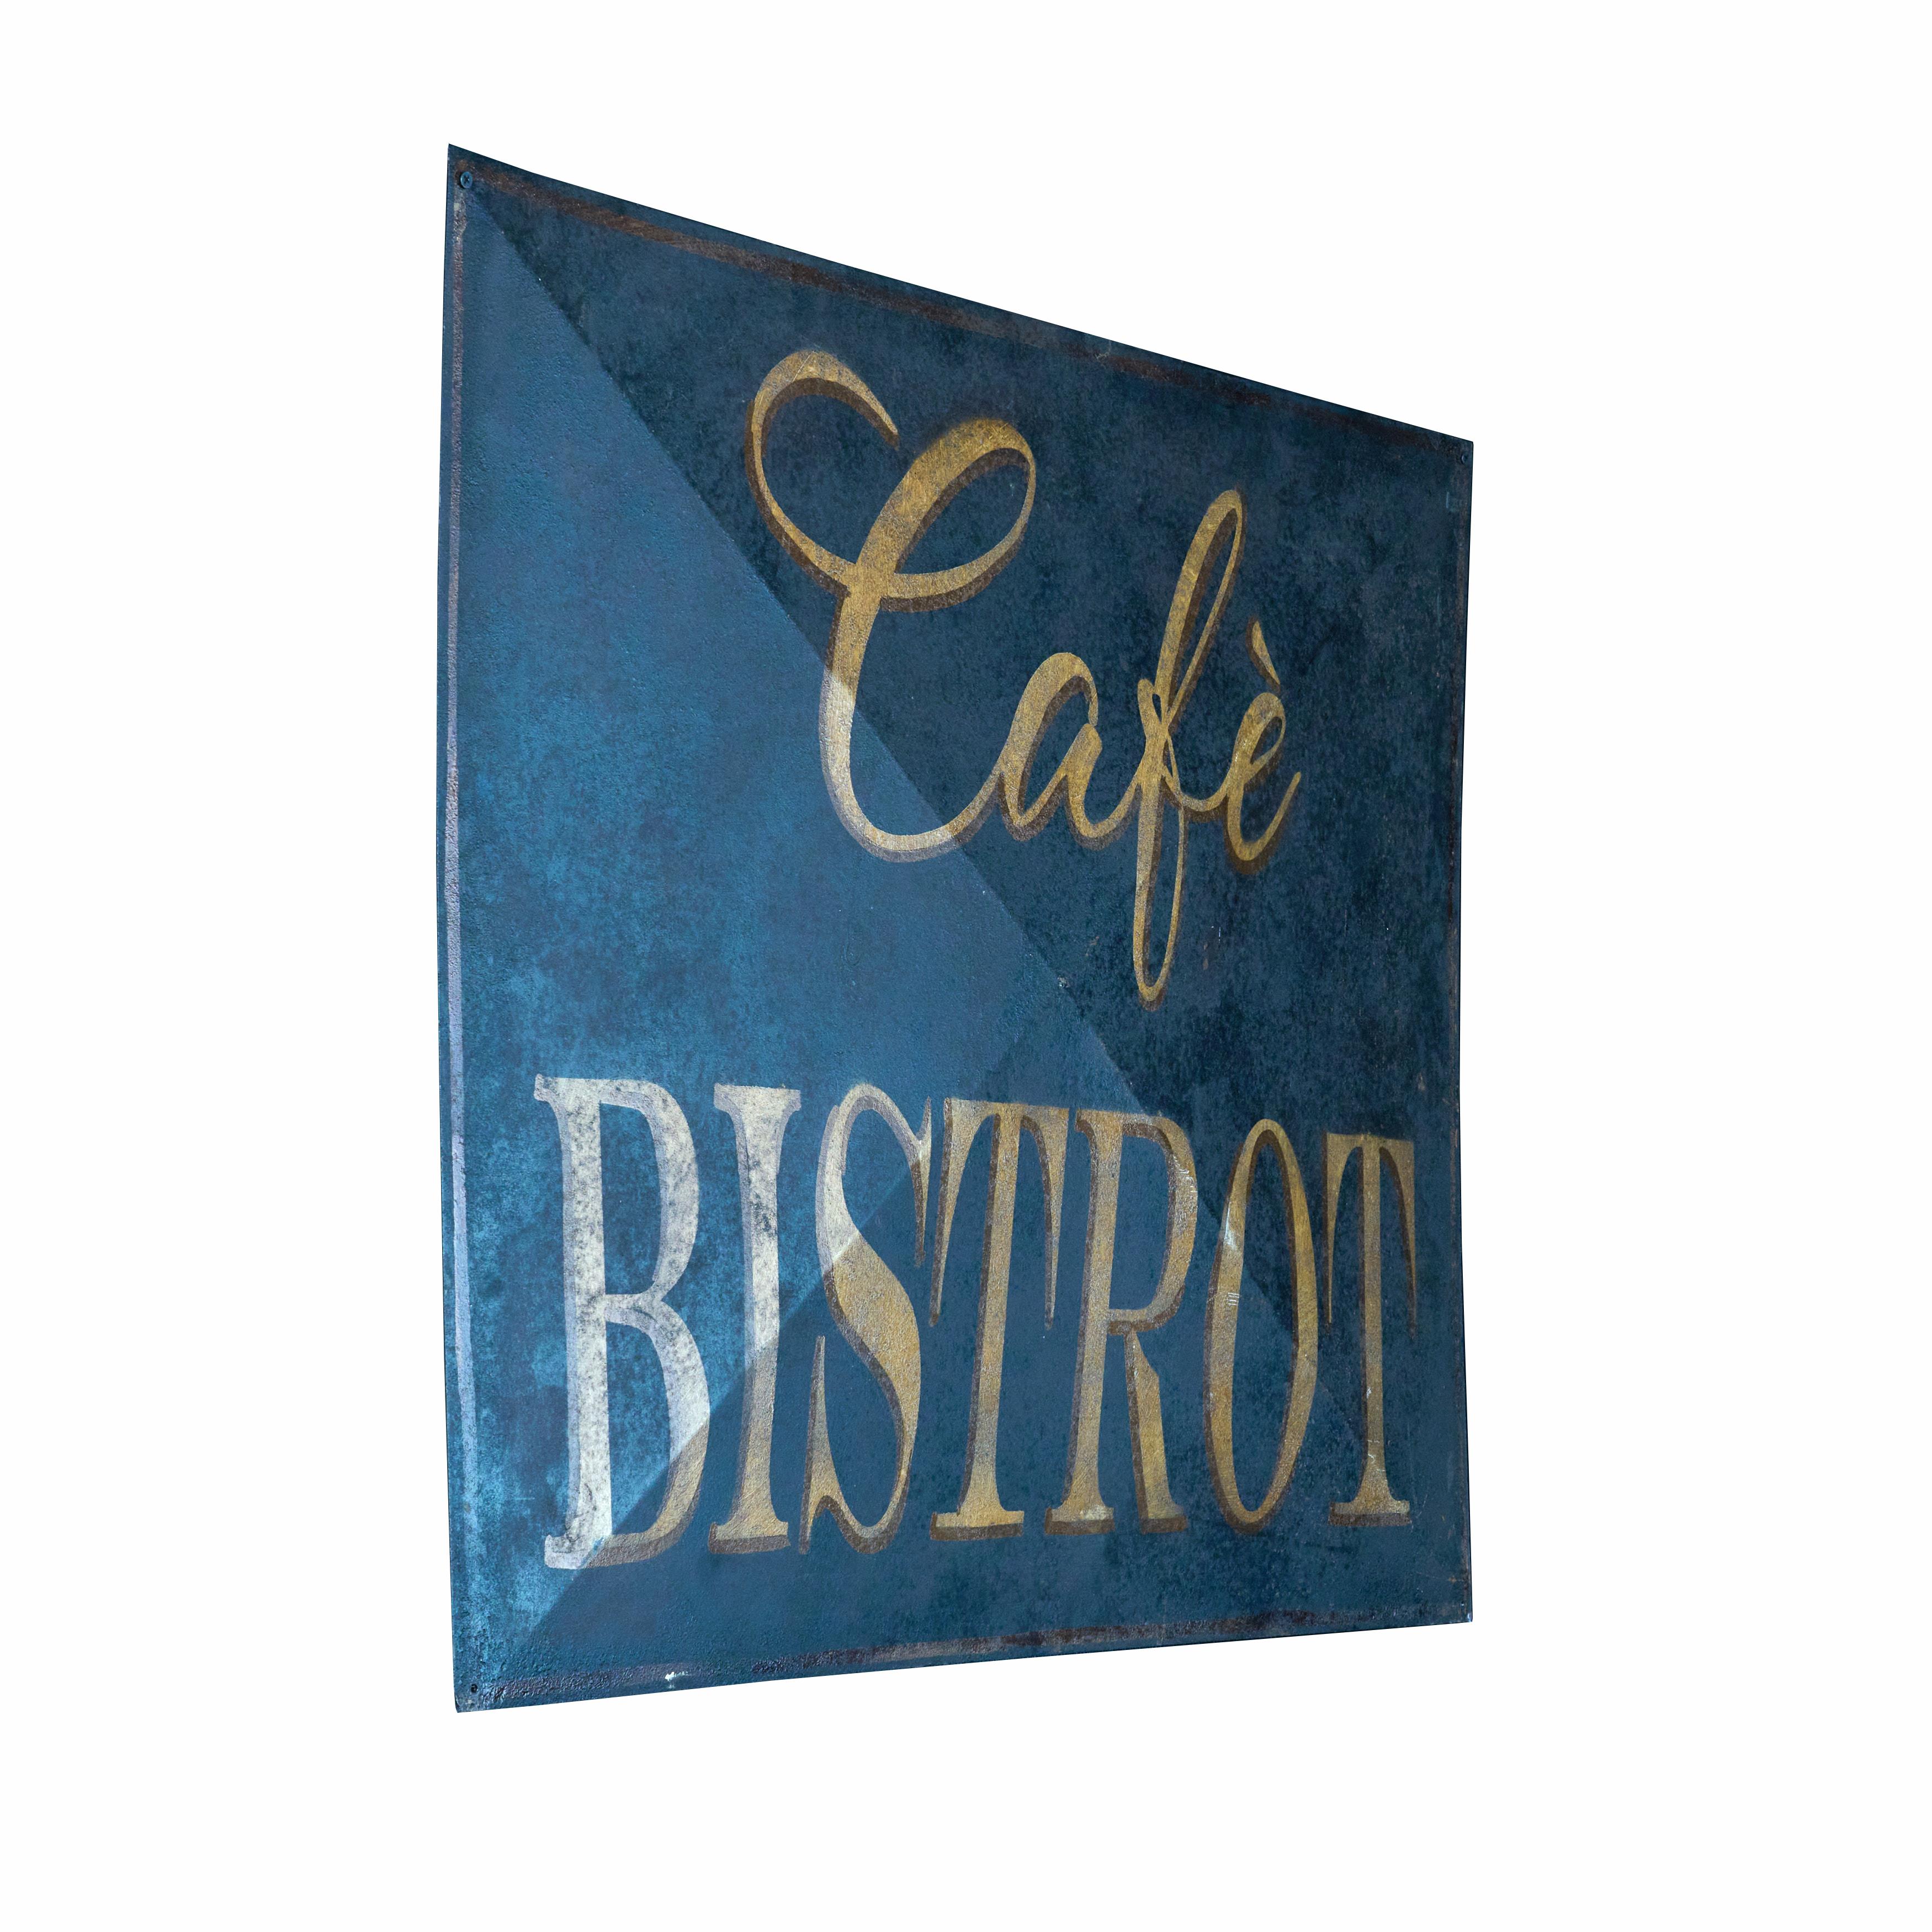 Enseigne originale du Café Bistro. Une peinture et une patine incroyables. Excellent état. 

